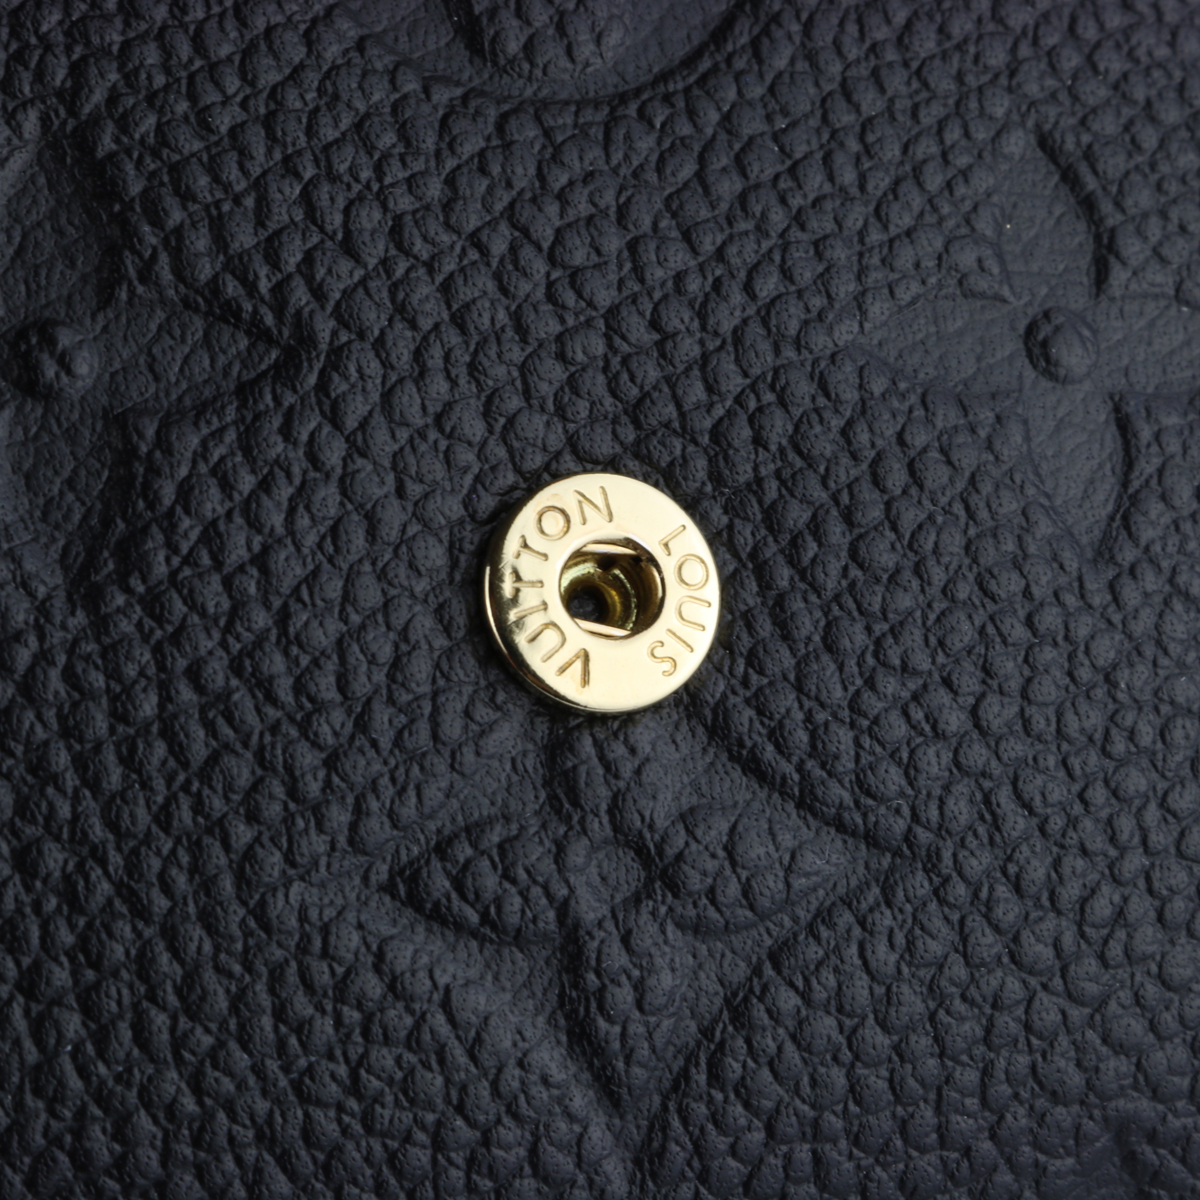 Louis Vuitton Victorine Wallet Monogram Empreinte Leather Black 2018 -  BoutiQi Bags